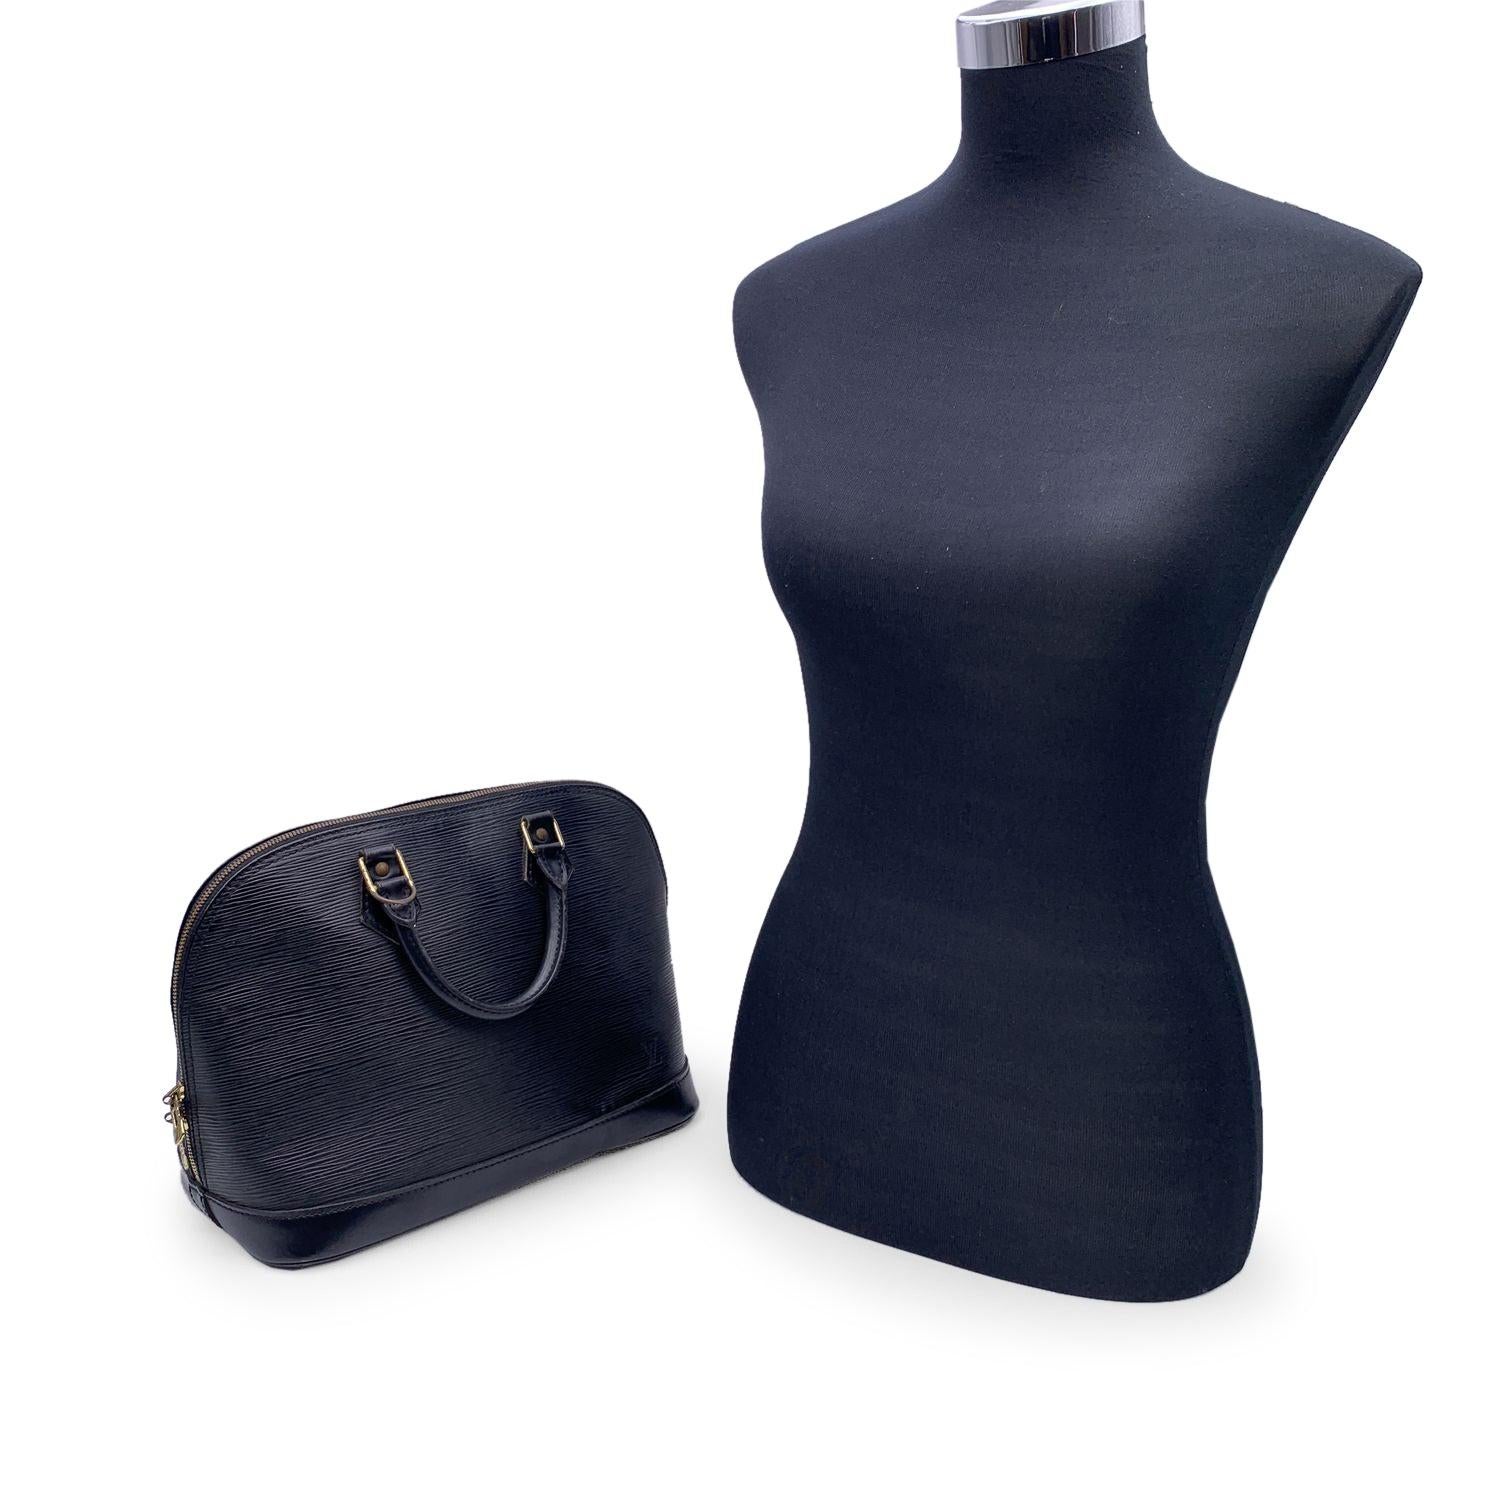 Inspiré de la forme inventée dans les années 30 par Gaston Vuitton, l'ALMA de LOUIS VUITTON est un classique de la Maison. Fermeture à glissière supérieure. Porté par une double poignée supérieure, ce sac est confectionné en cuir épi noir.